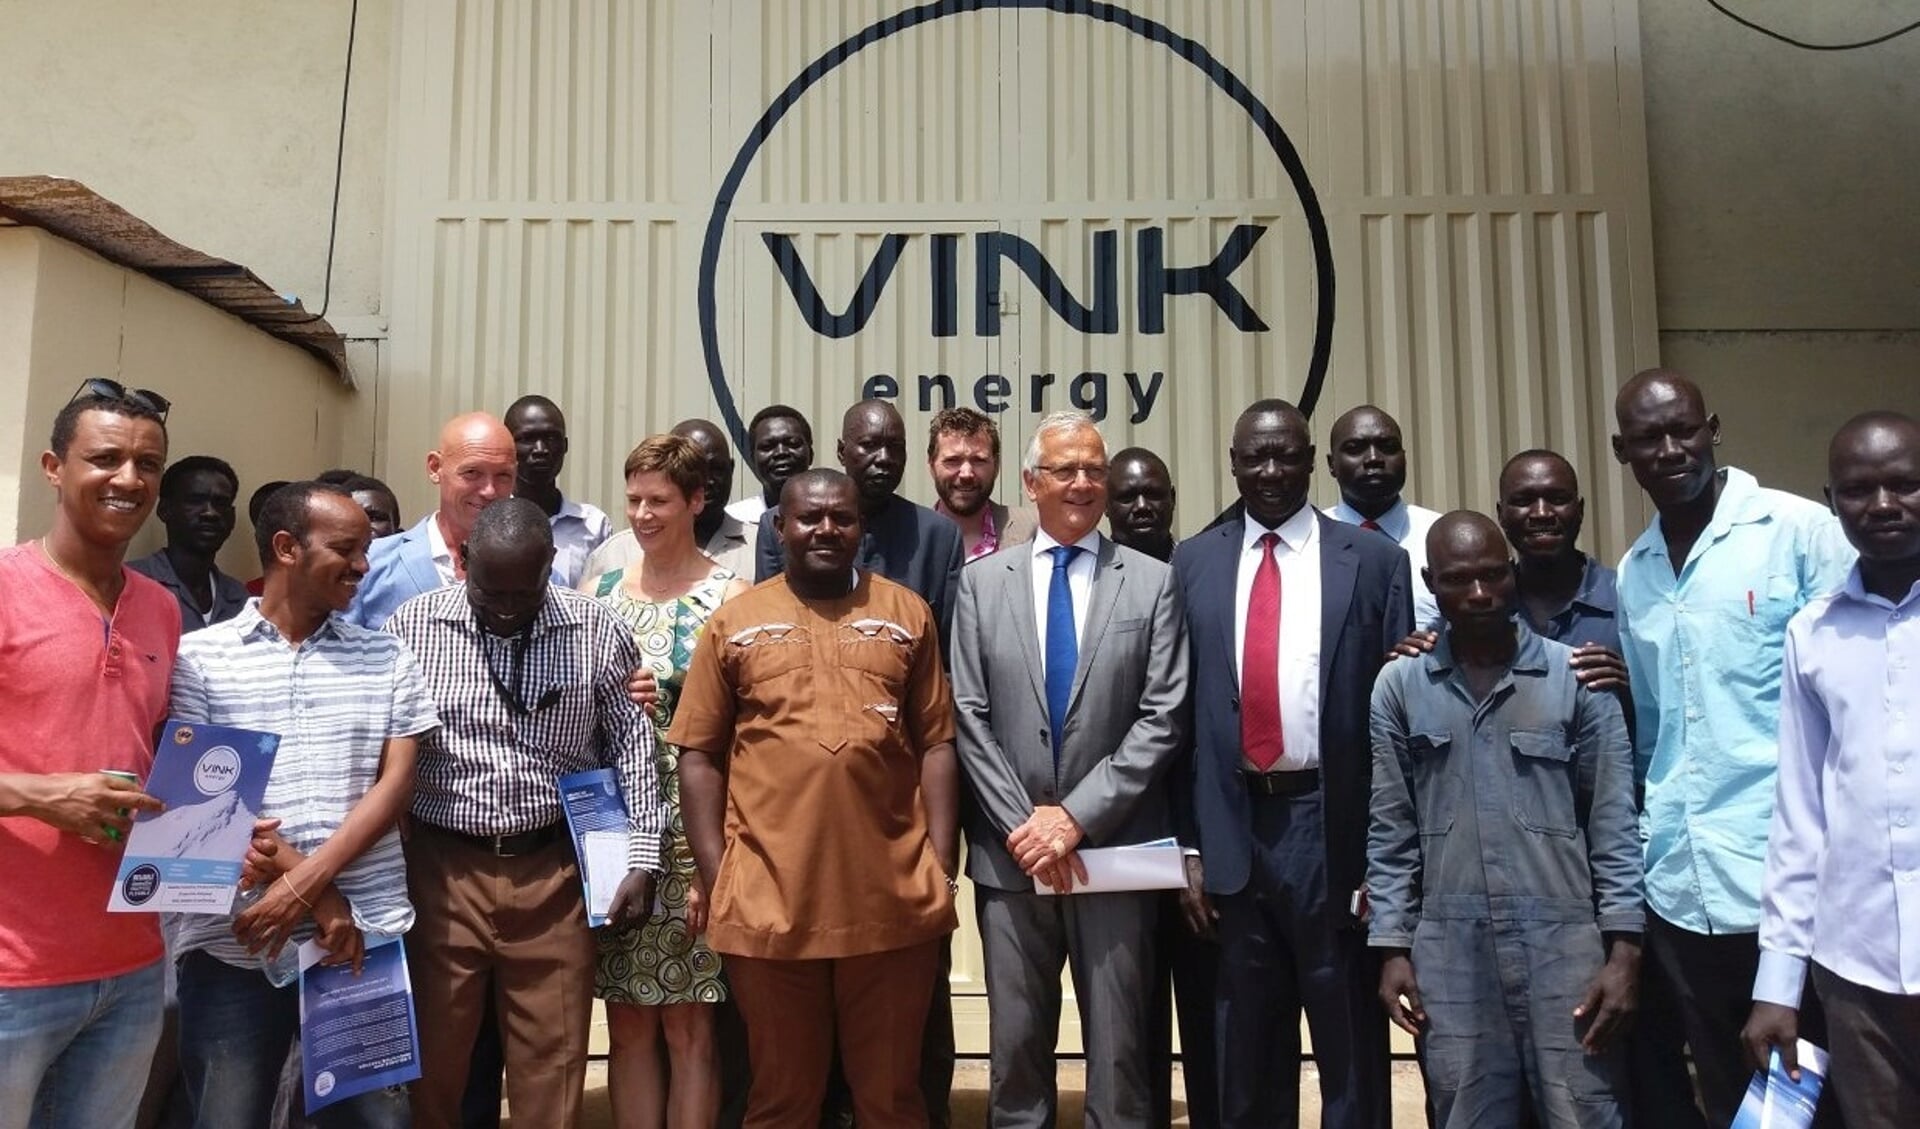 • De delegatie tijdens de officiële opening van Vink Koeltechniek in Zuid-Sudan.